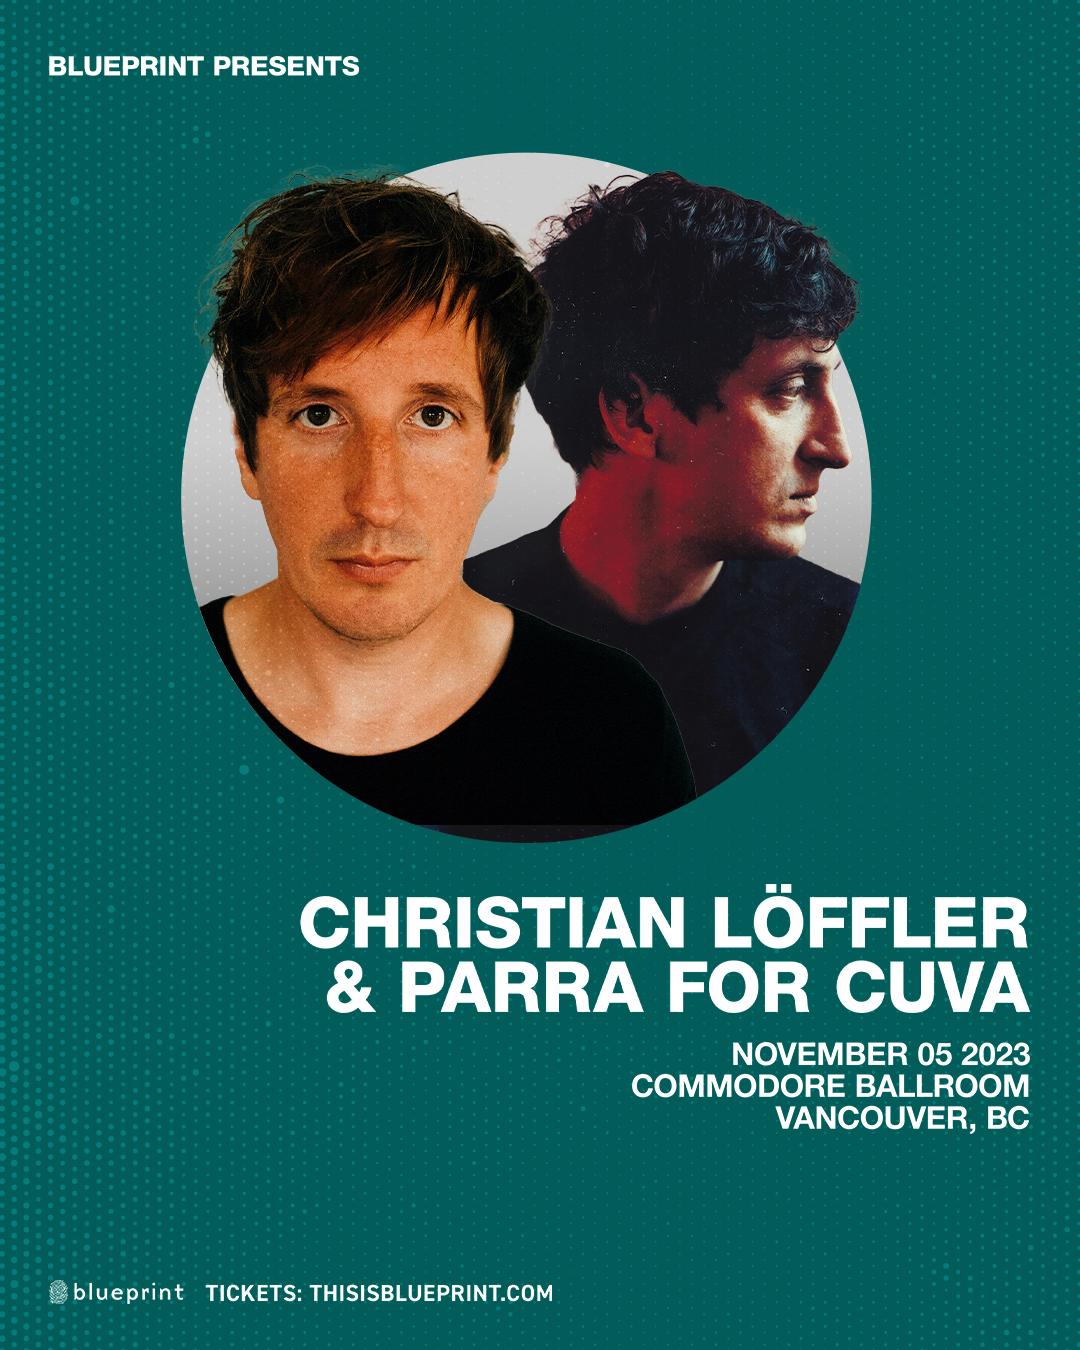 Parra for Cuva & Christian Löffler - Página frontal